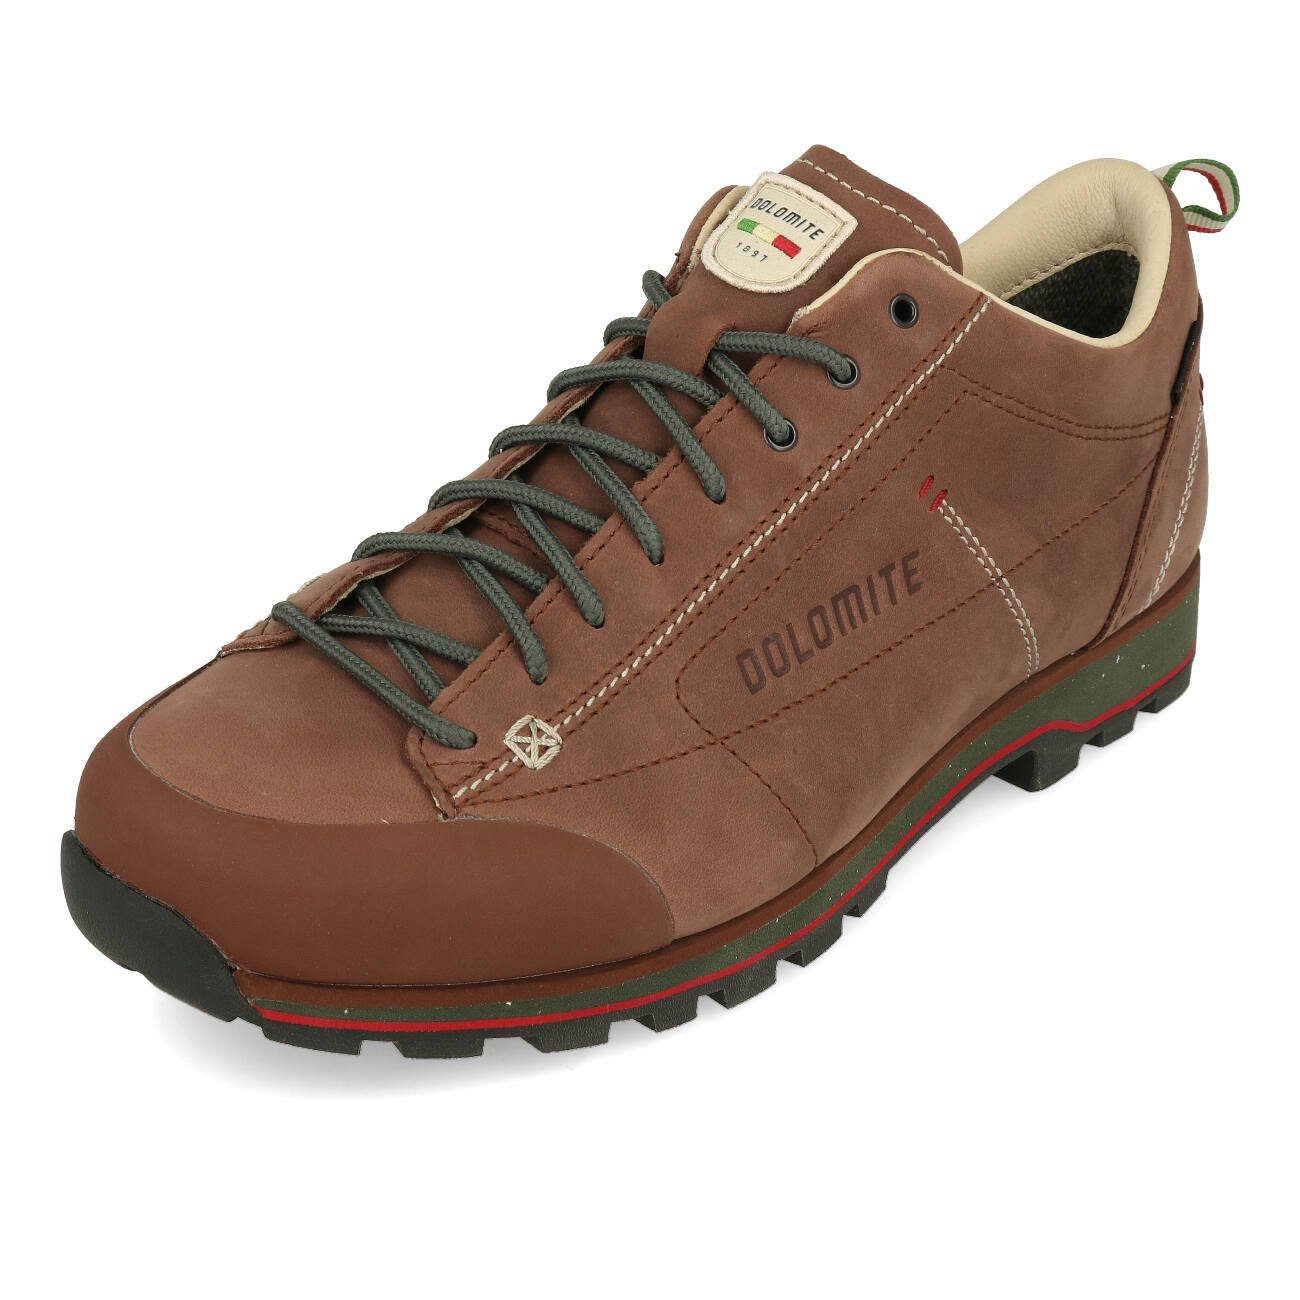 Low Outdoorschuh GTX Fg 1523 Dolomite M's Shoe Chestnut 54 Herren Cinquantaquattro Evo chestnut Dolomite brown